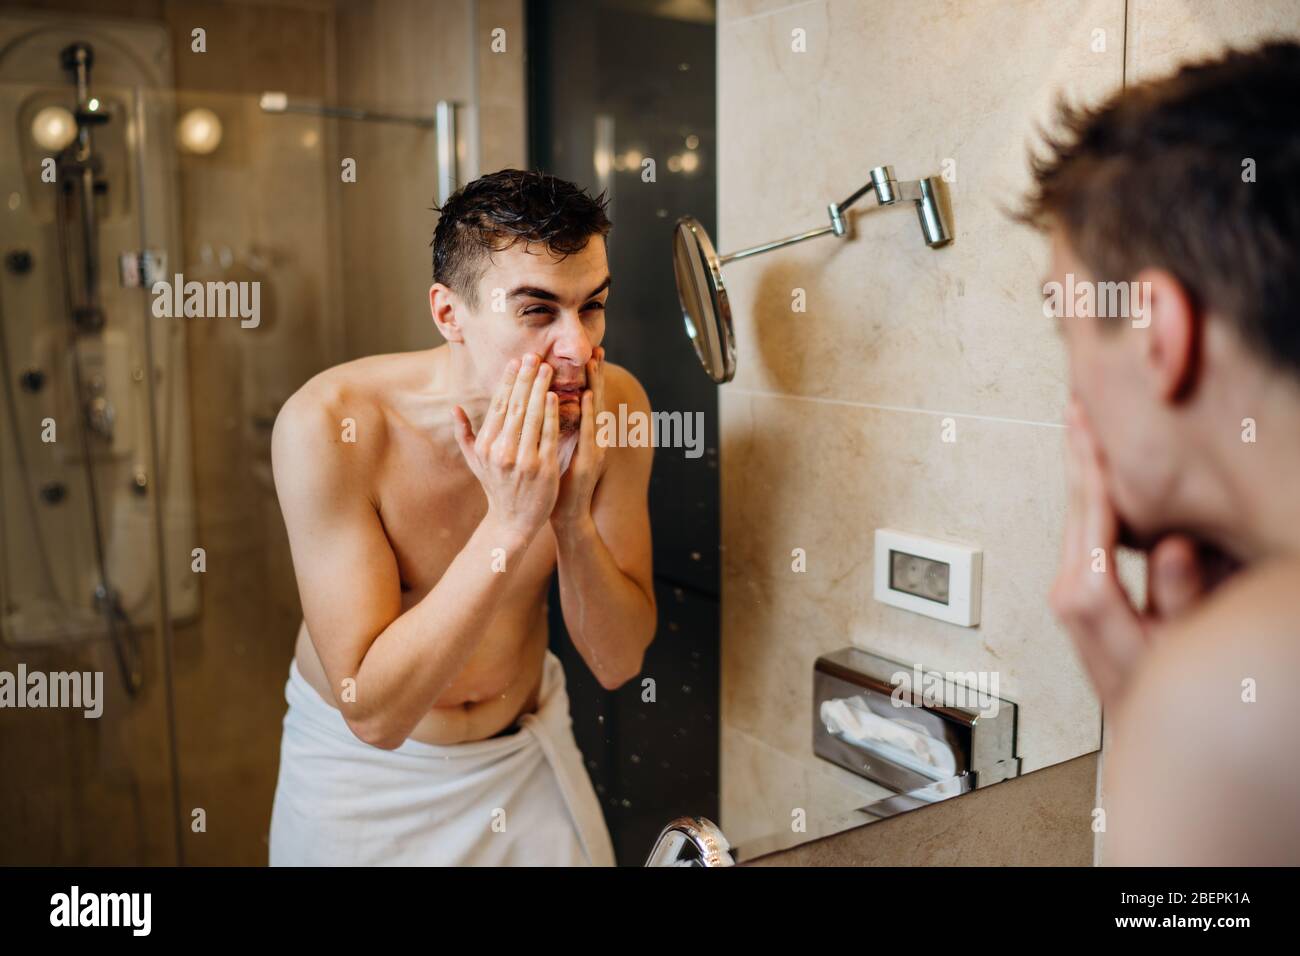 Giovane uomo che ha una procedura quotidiana di rasatura della barba, applicando lozione di aftershave.eruzione cutanea allergica pruriginosa reazione alla cura della pelle igiene product.Faci Foto Stock